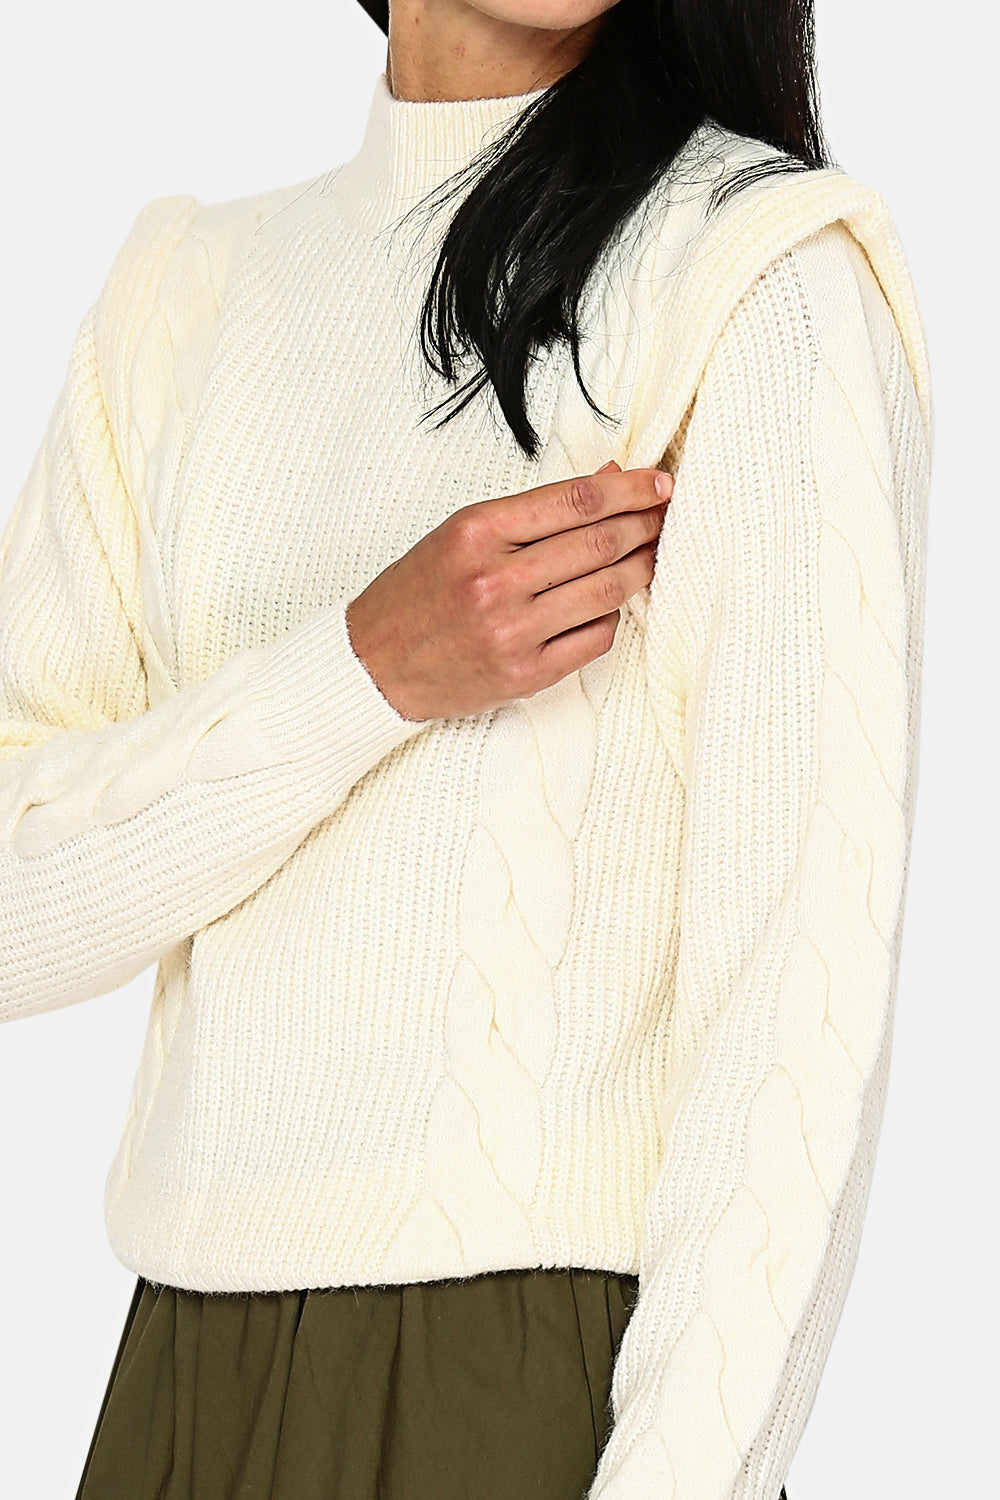 Pullover mit hohem Halsausschnitt, englischem Rippenmuster und Twist an der Vorderseite und an den Ärmeln